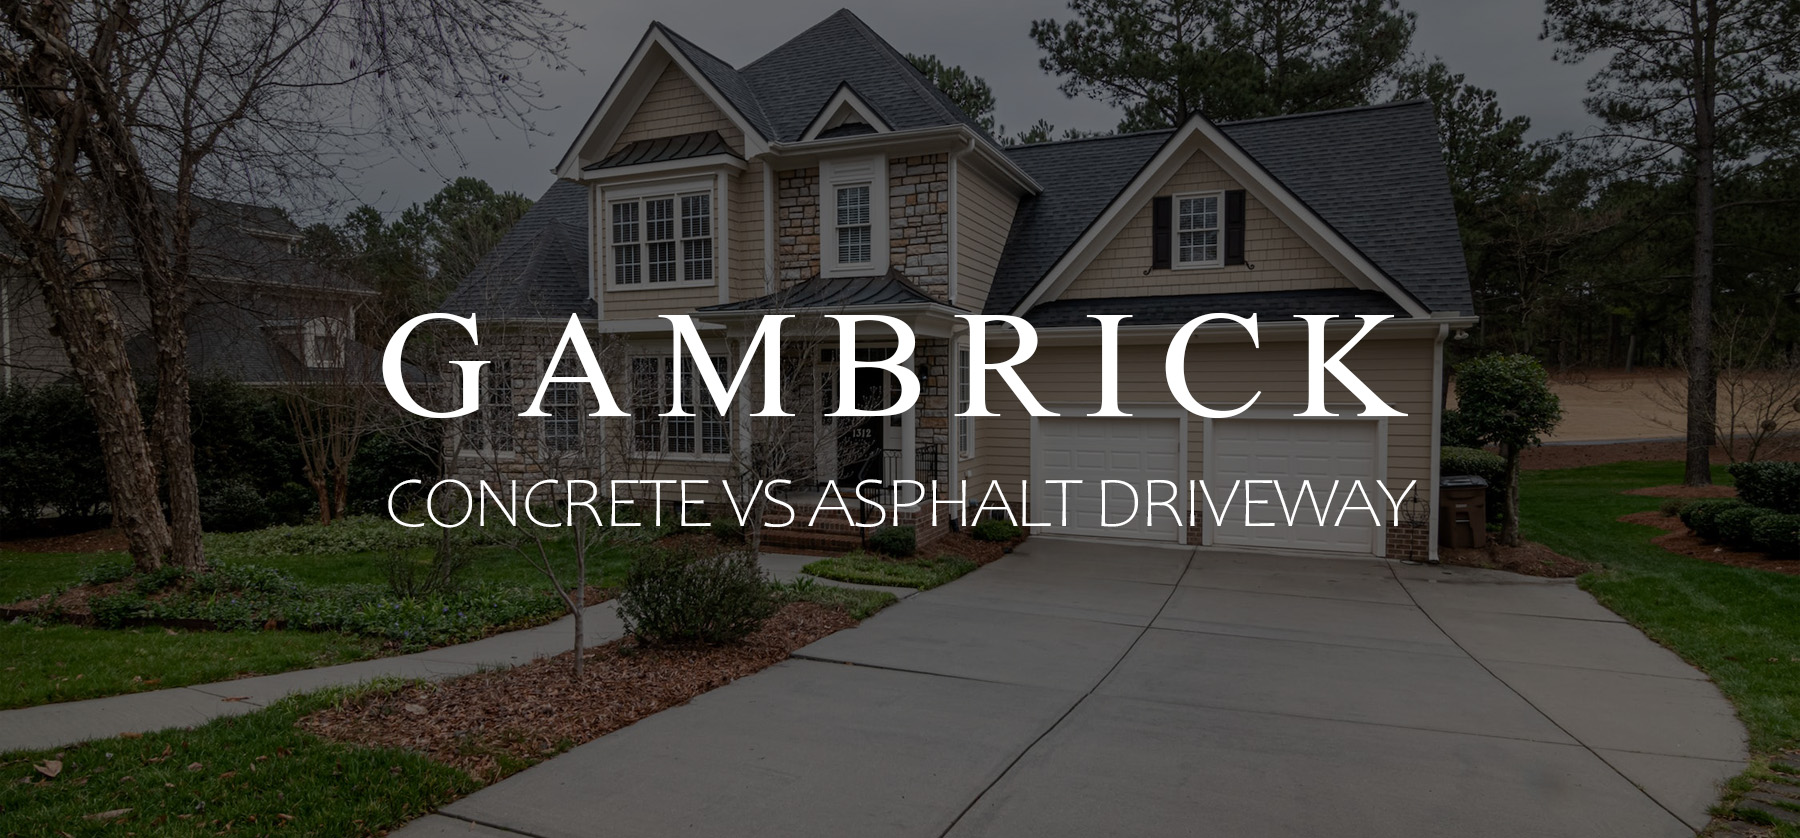 concrete vs asphalt driveway banner 1.1